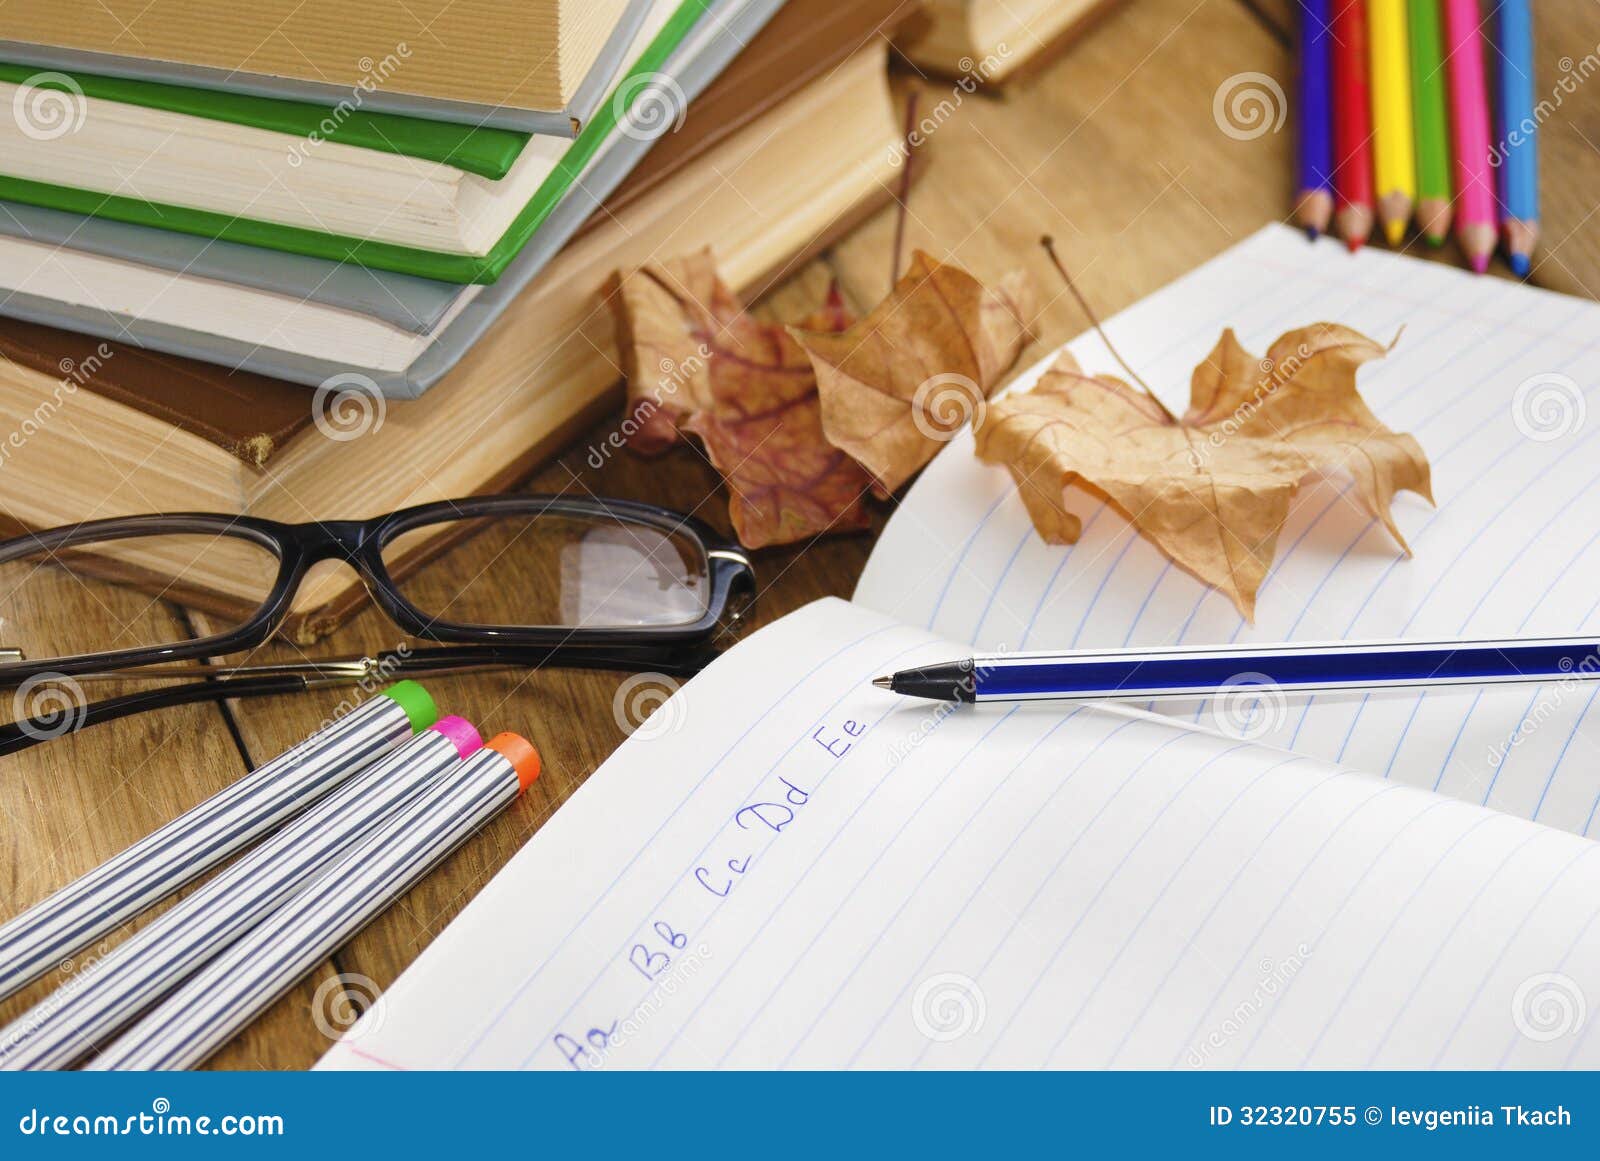 На учительском столе лежала стопка одинаковых учебников. Тетради на столе учителя. Учительский стол с тетрадями. Учеба тетради ручки. Стол учителя с книжками ручками.